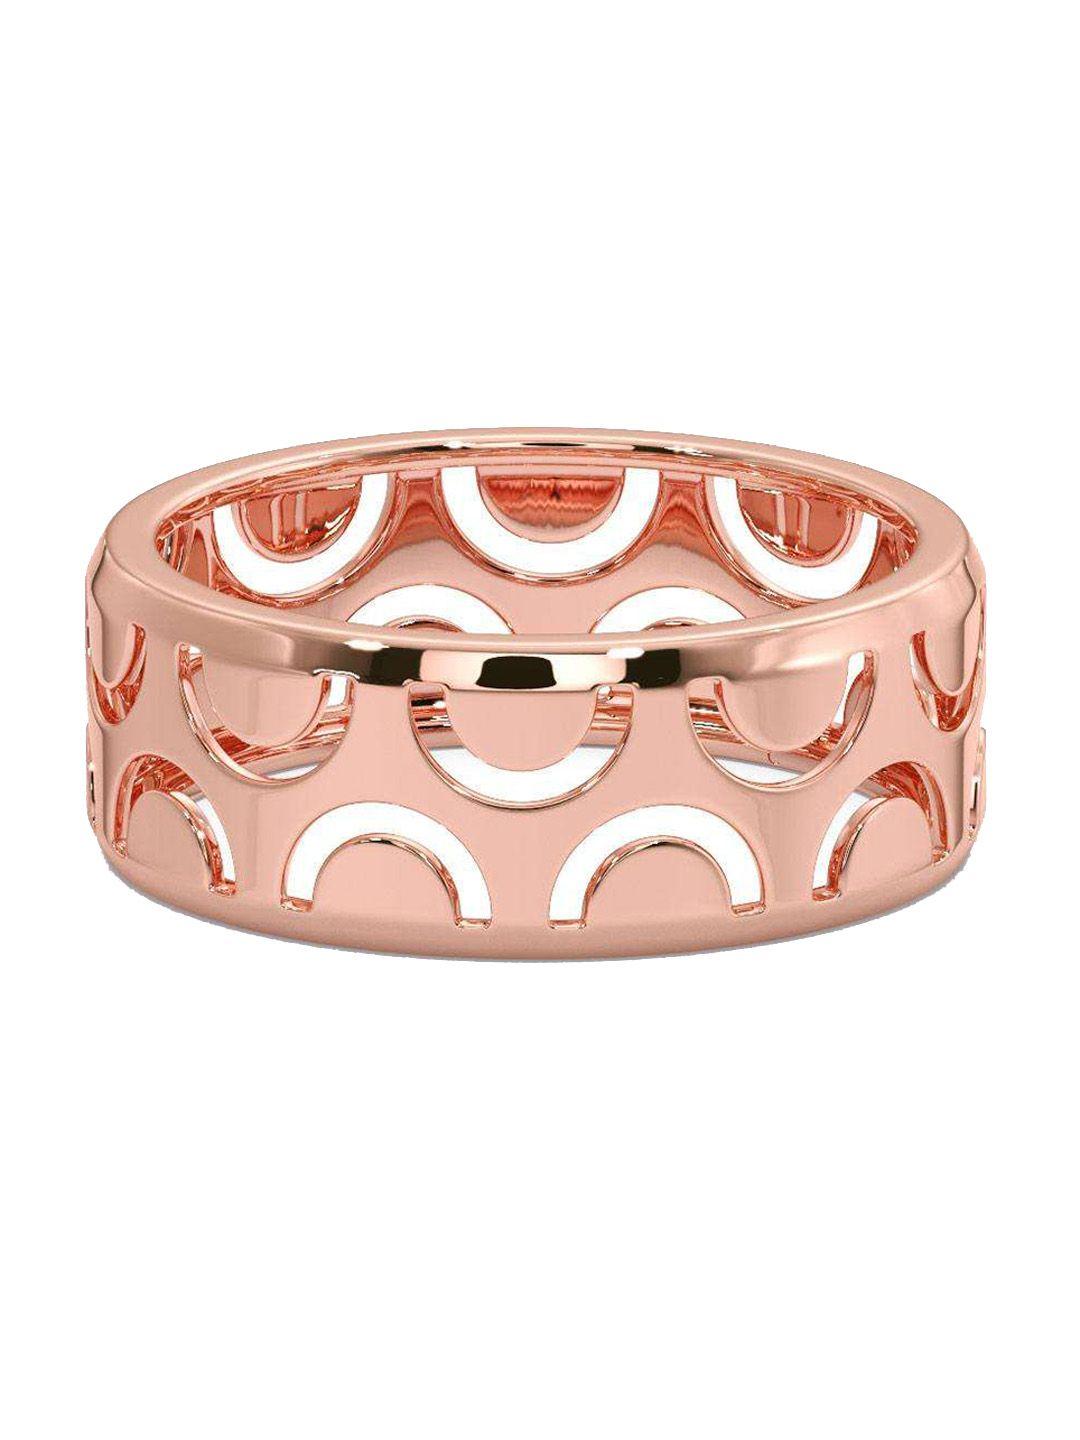 candere a kalyan jewellers company men 18kt bis hallmark rose gold finger ring- 4.47gm